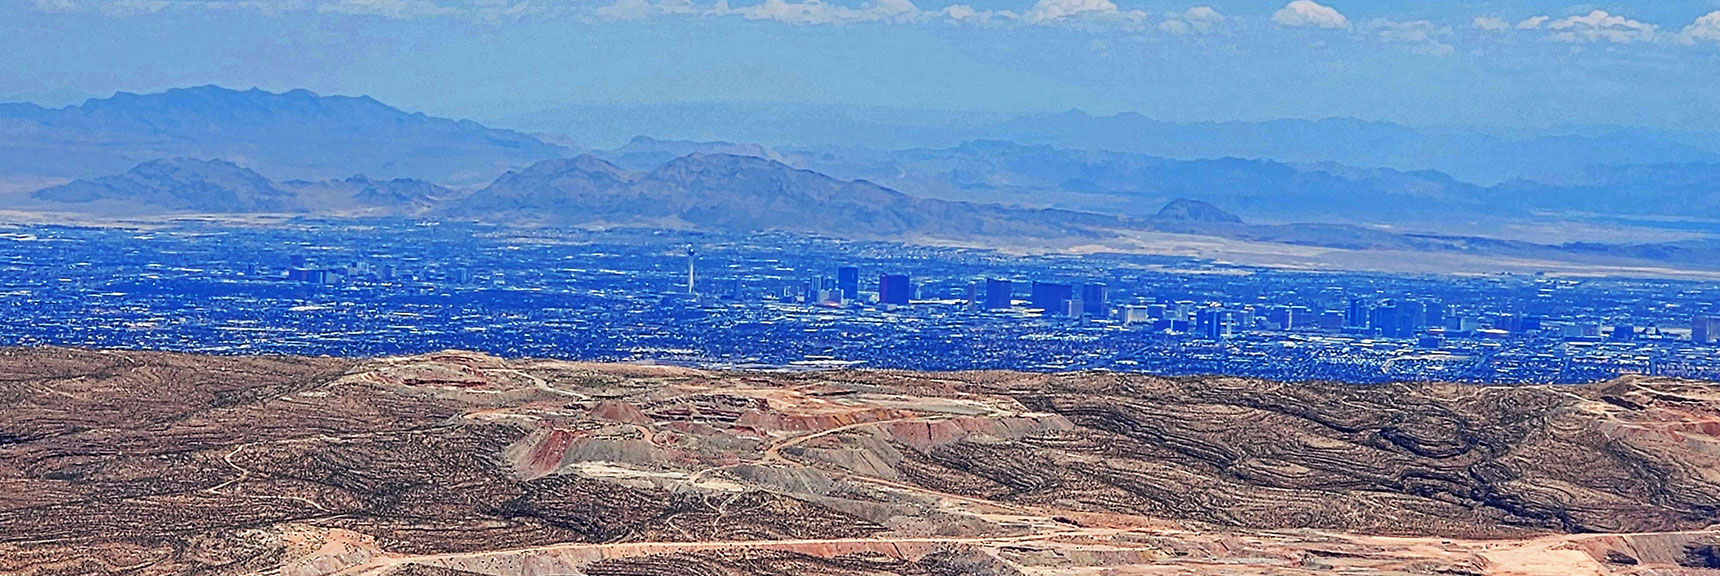 Las Vegas Strip from High Point Above Indecision Peak | Mt Wilson to Hidden Peak | Upper Crest Ridgeline | Rainbow Mountain Wilderness, Nevada